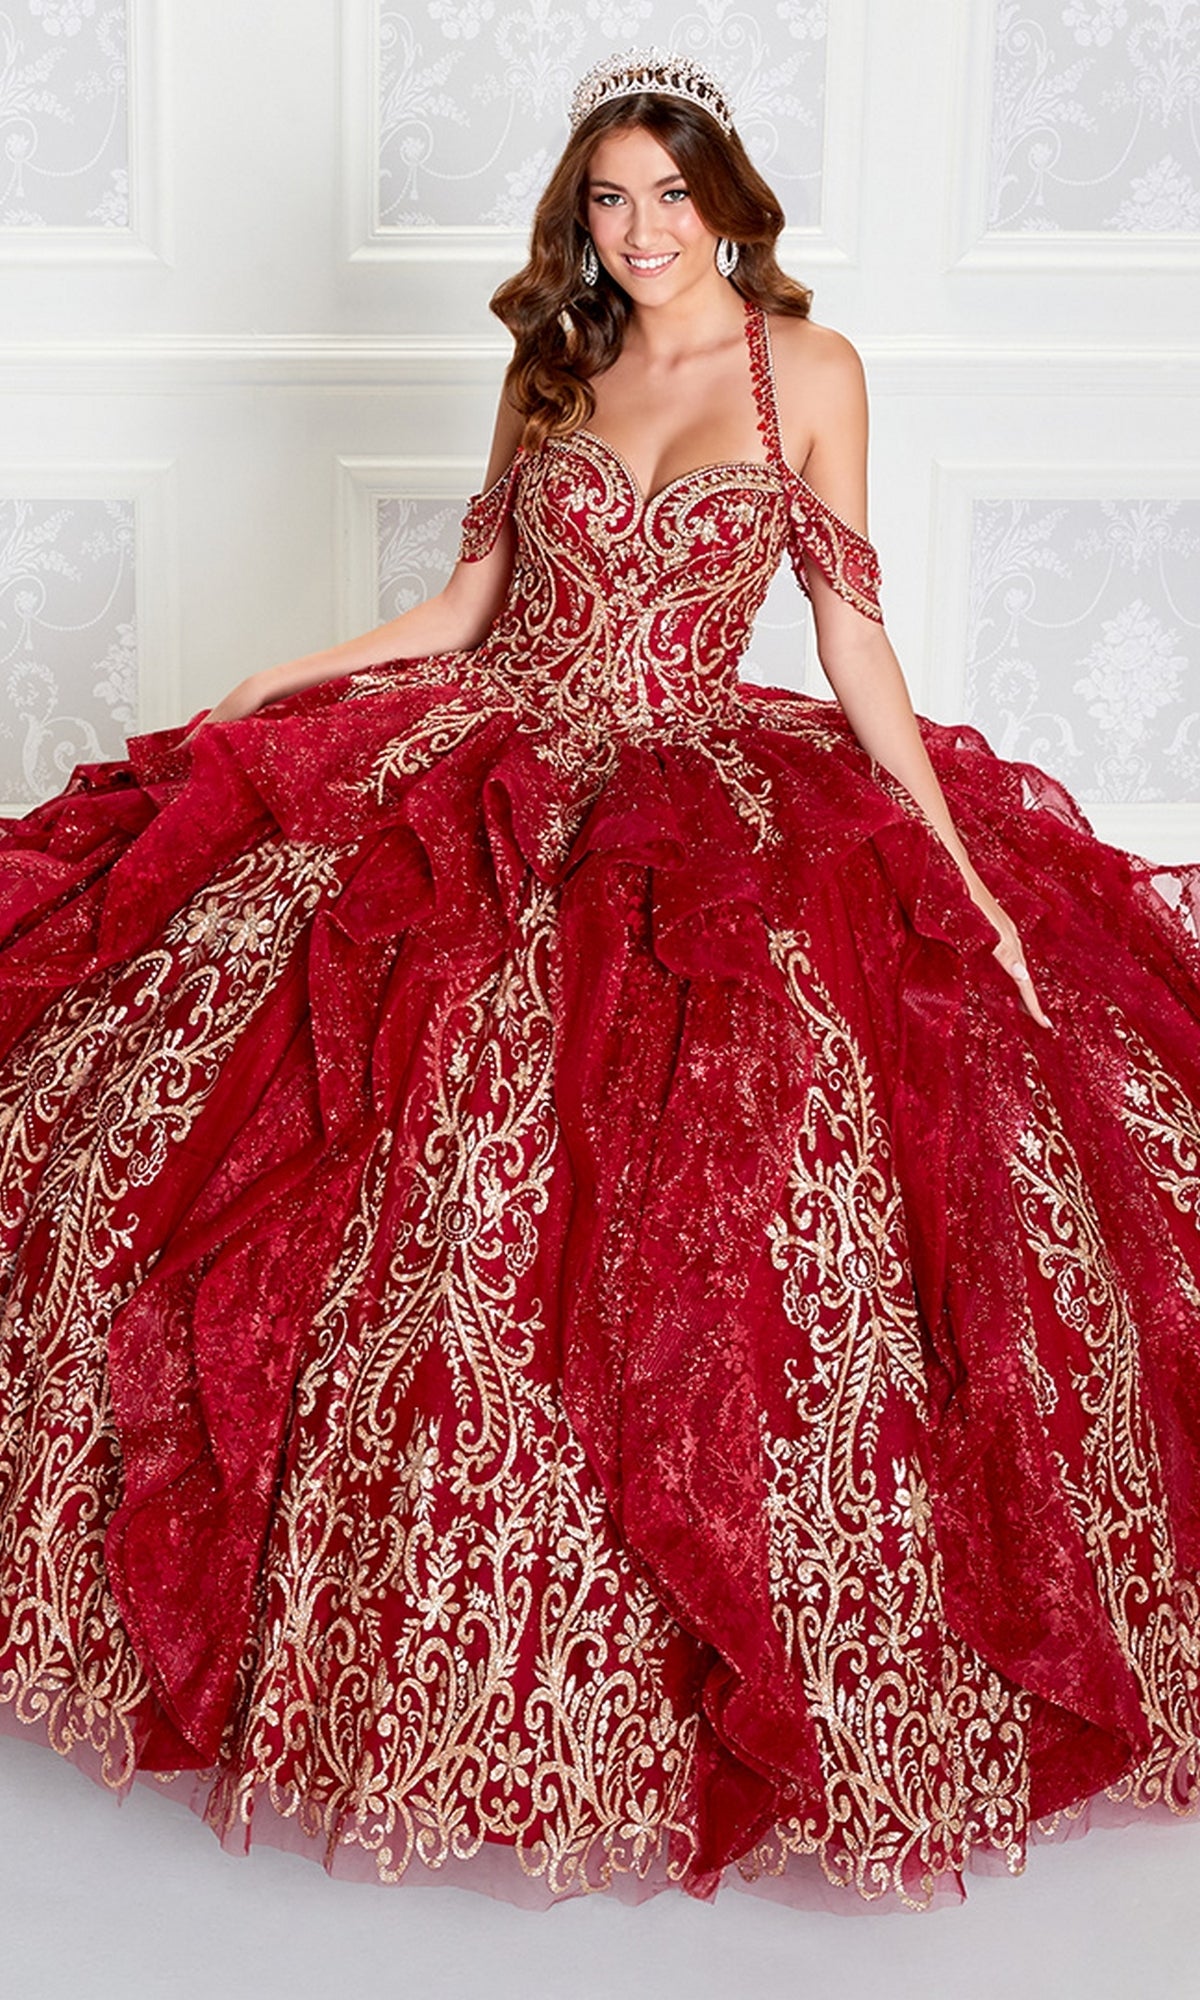 Princesa PR12274 Quinceañera Dress with Glitter